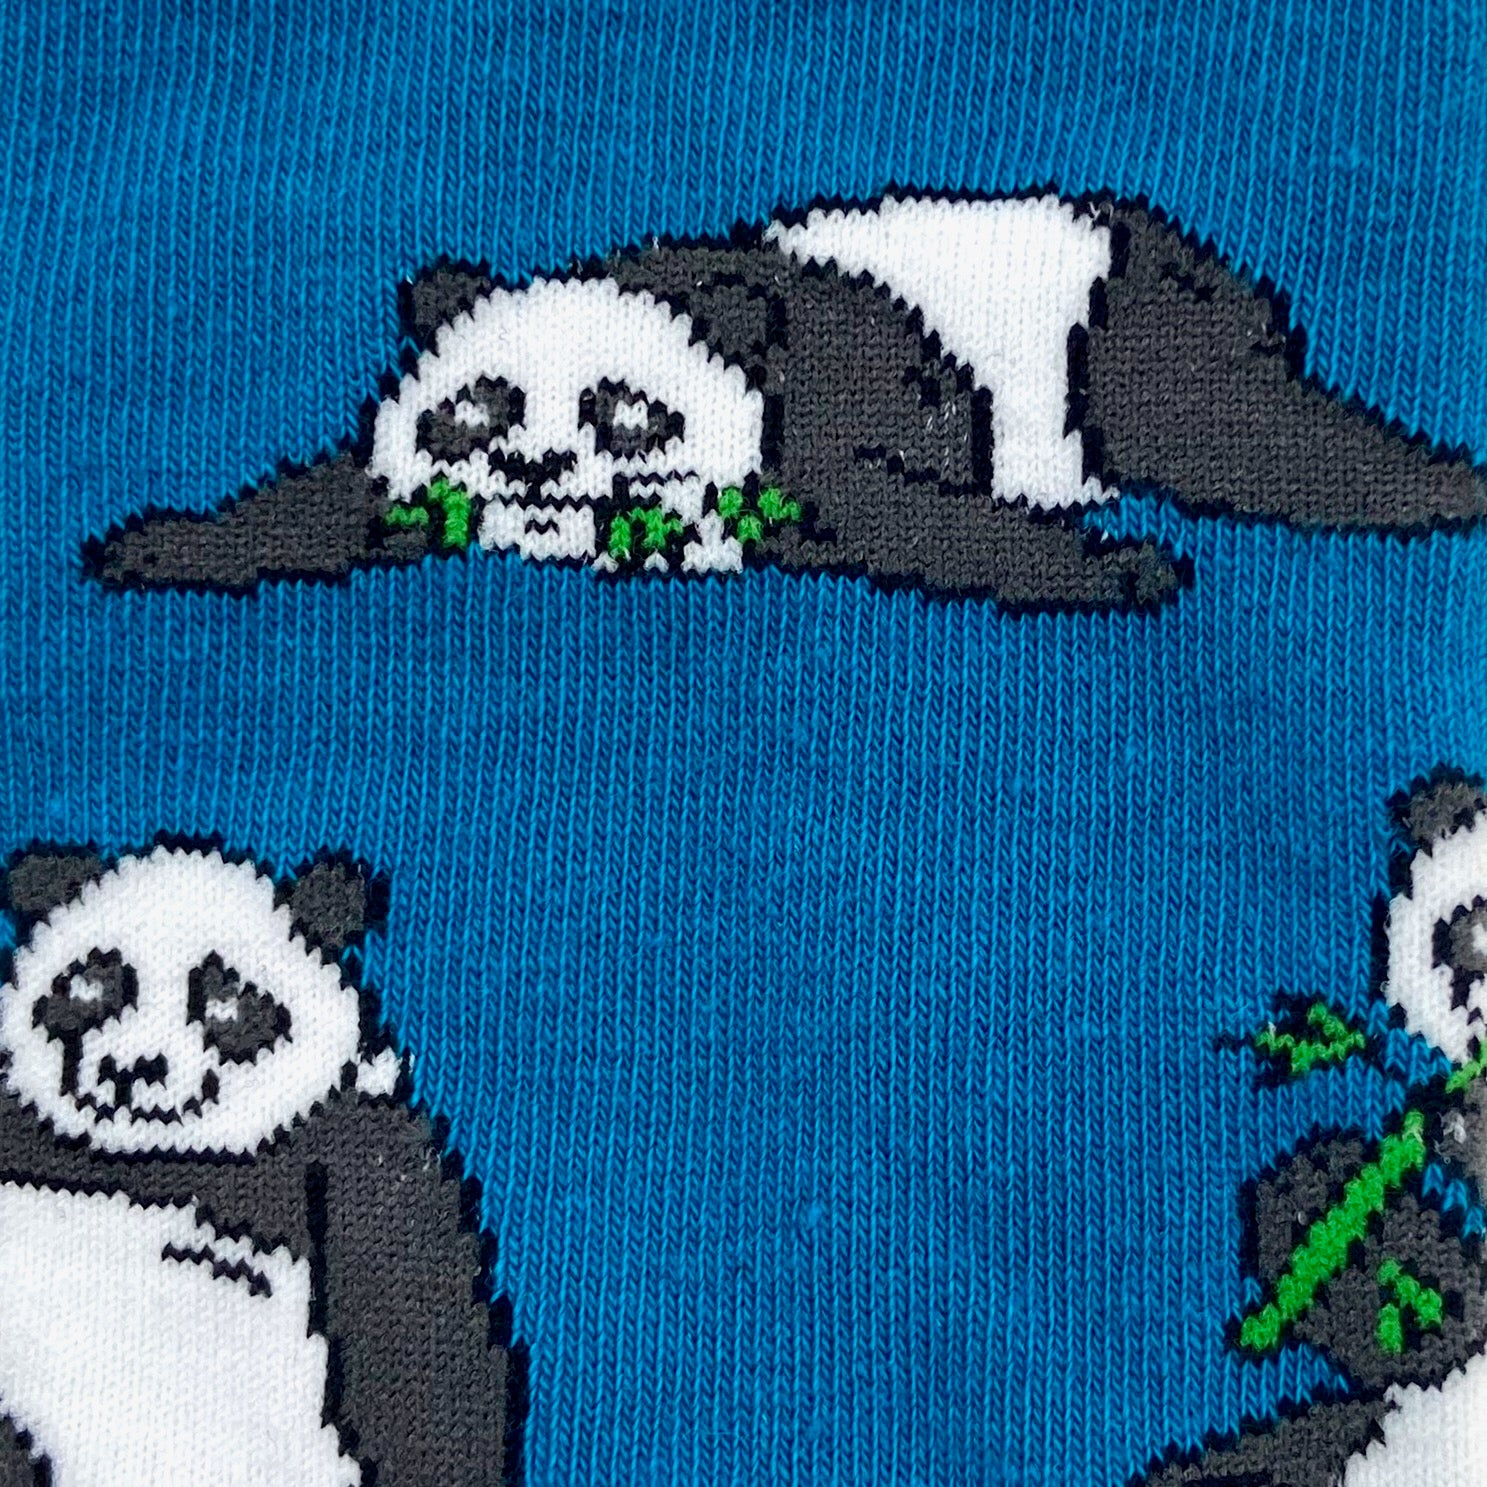 Unisex Lazy Days Panda Bear Patterned Long Novelty Crew Dress Socks